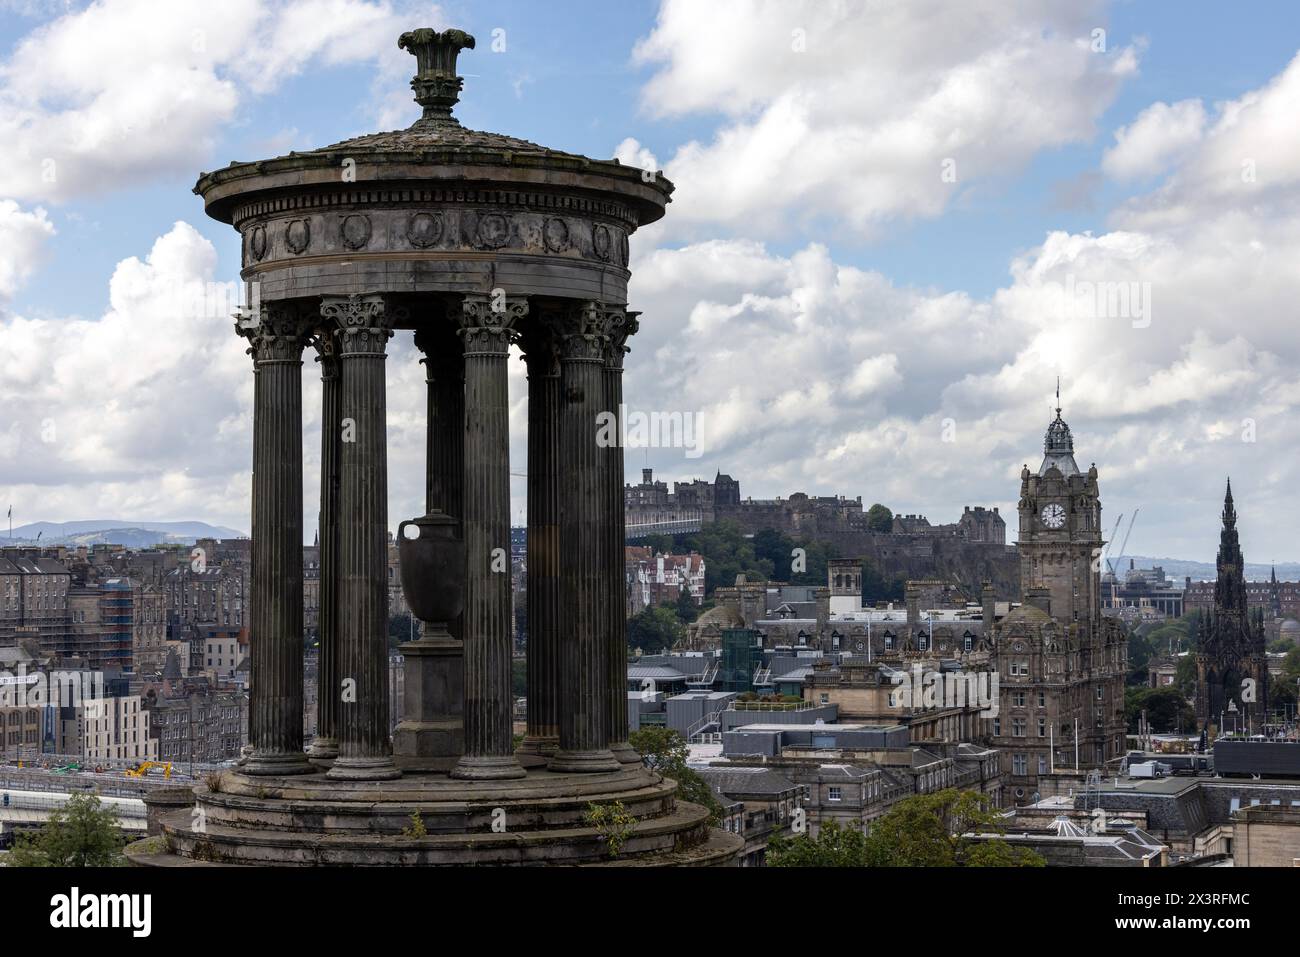 Das Dugald Stewart Monument auf Calton Hill, Edinburgh, mit dem Balmoral Hotel und Edinburgh Castle in der Ferne Stockfoto